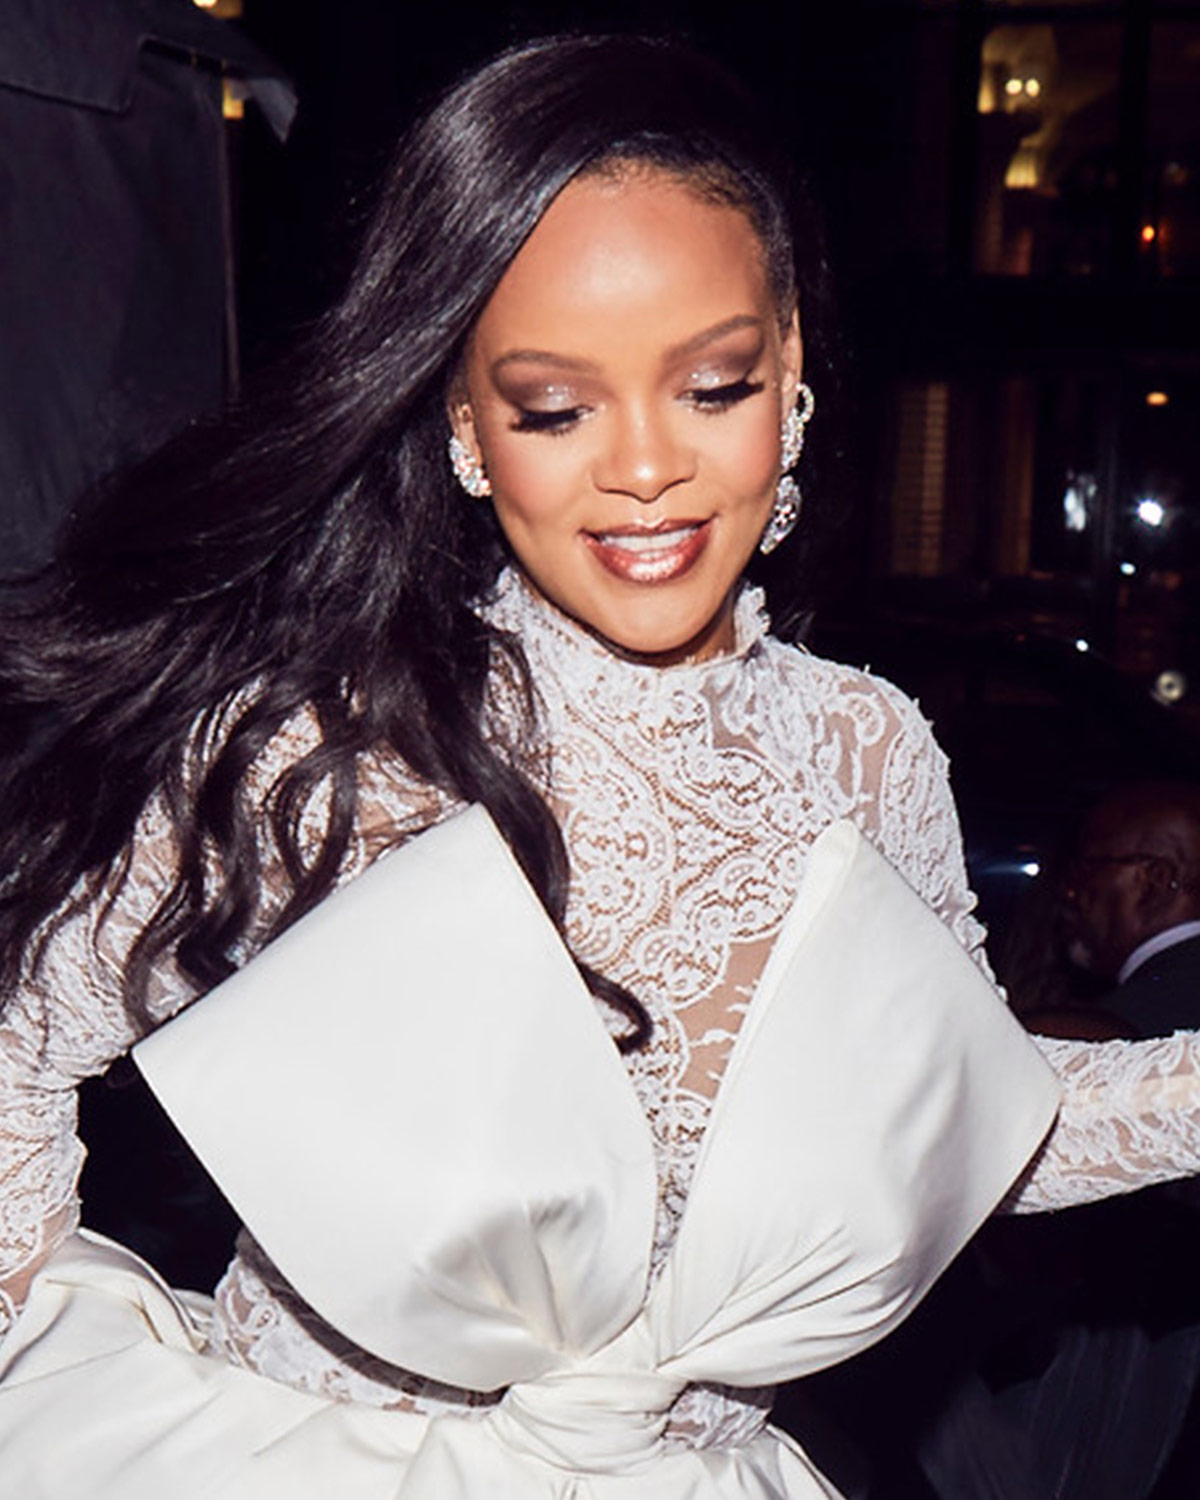 Φαντάζεσαι η Rihanna να σου υπογράψει τα καλλυντικά σου; Μόλις το έκανε!